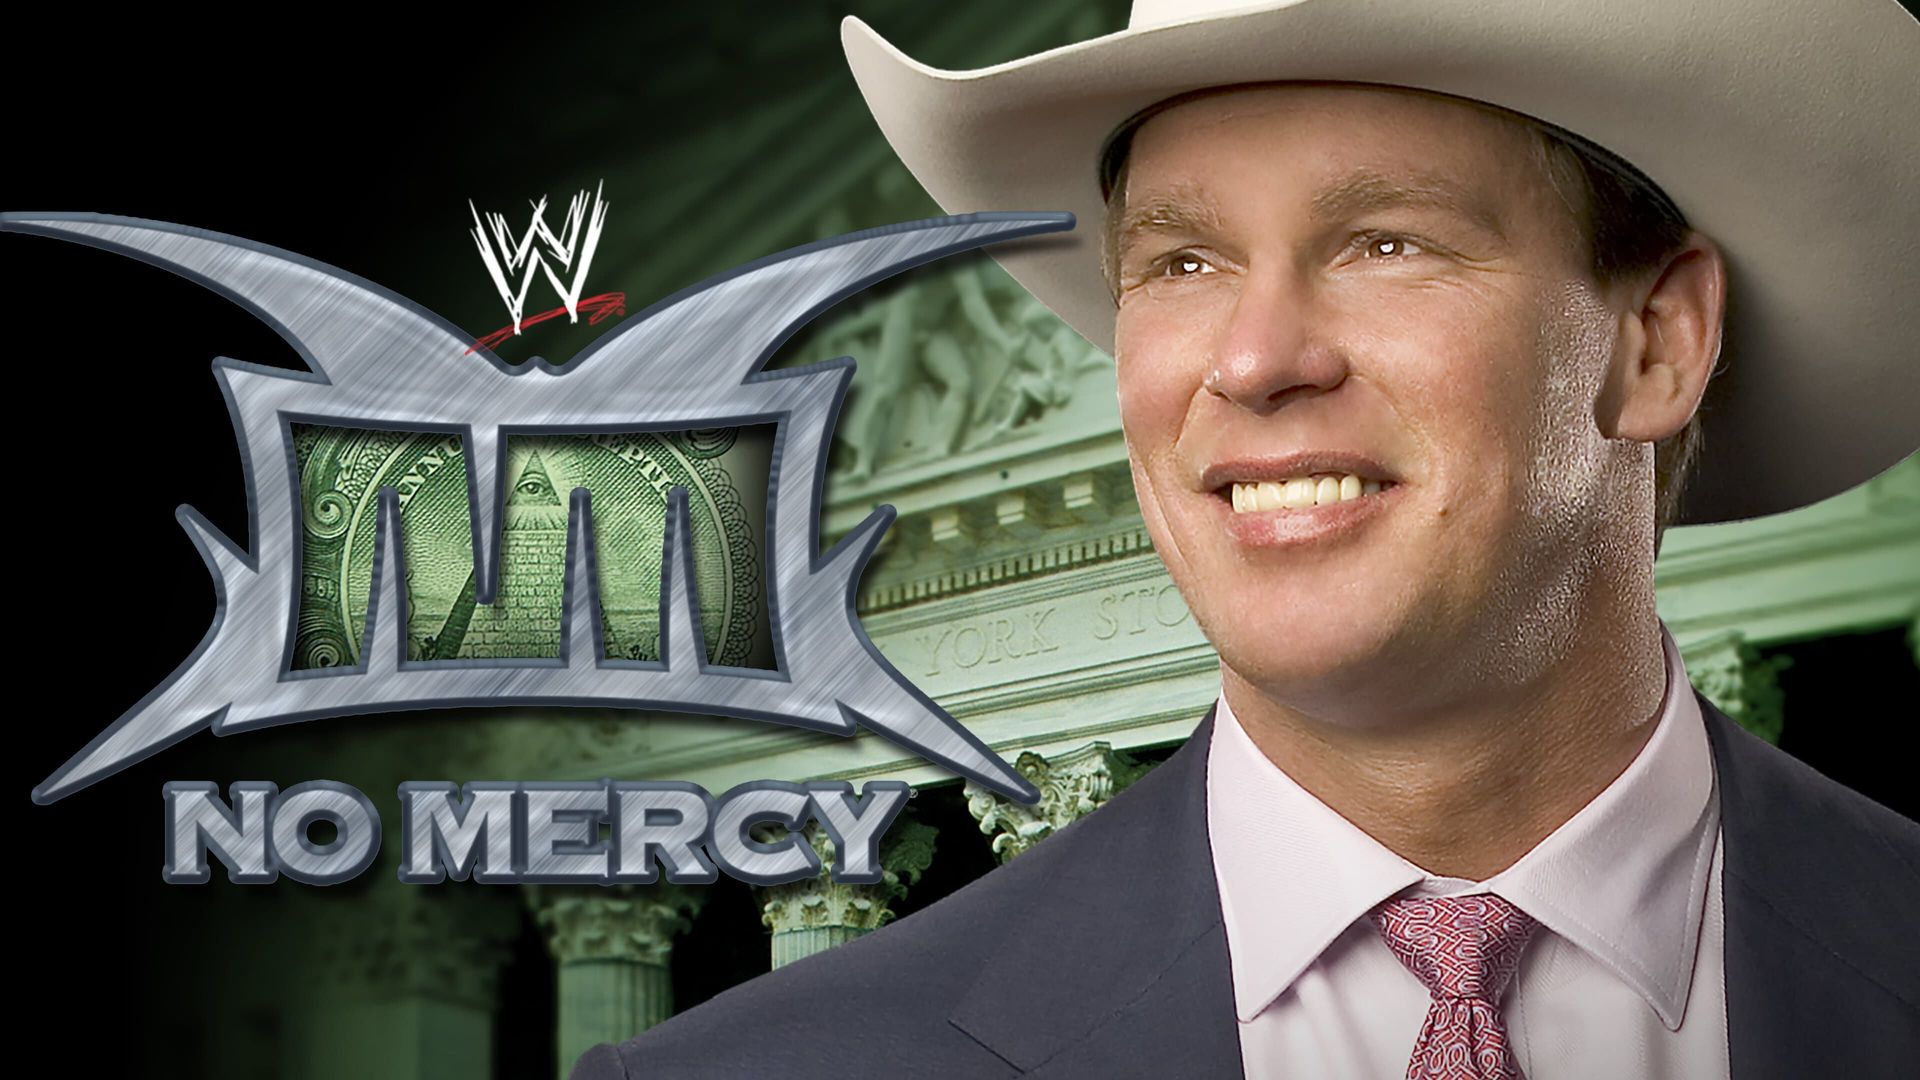 WWE No Mercy background